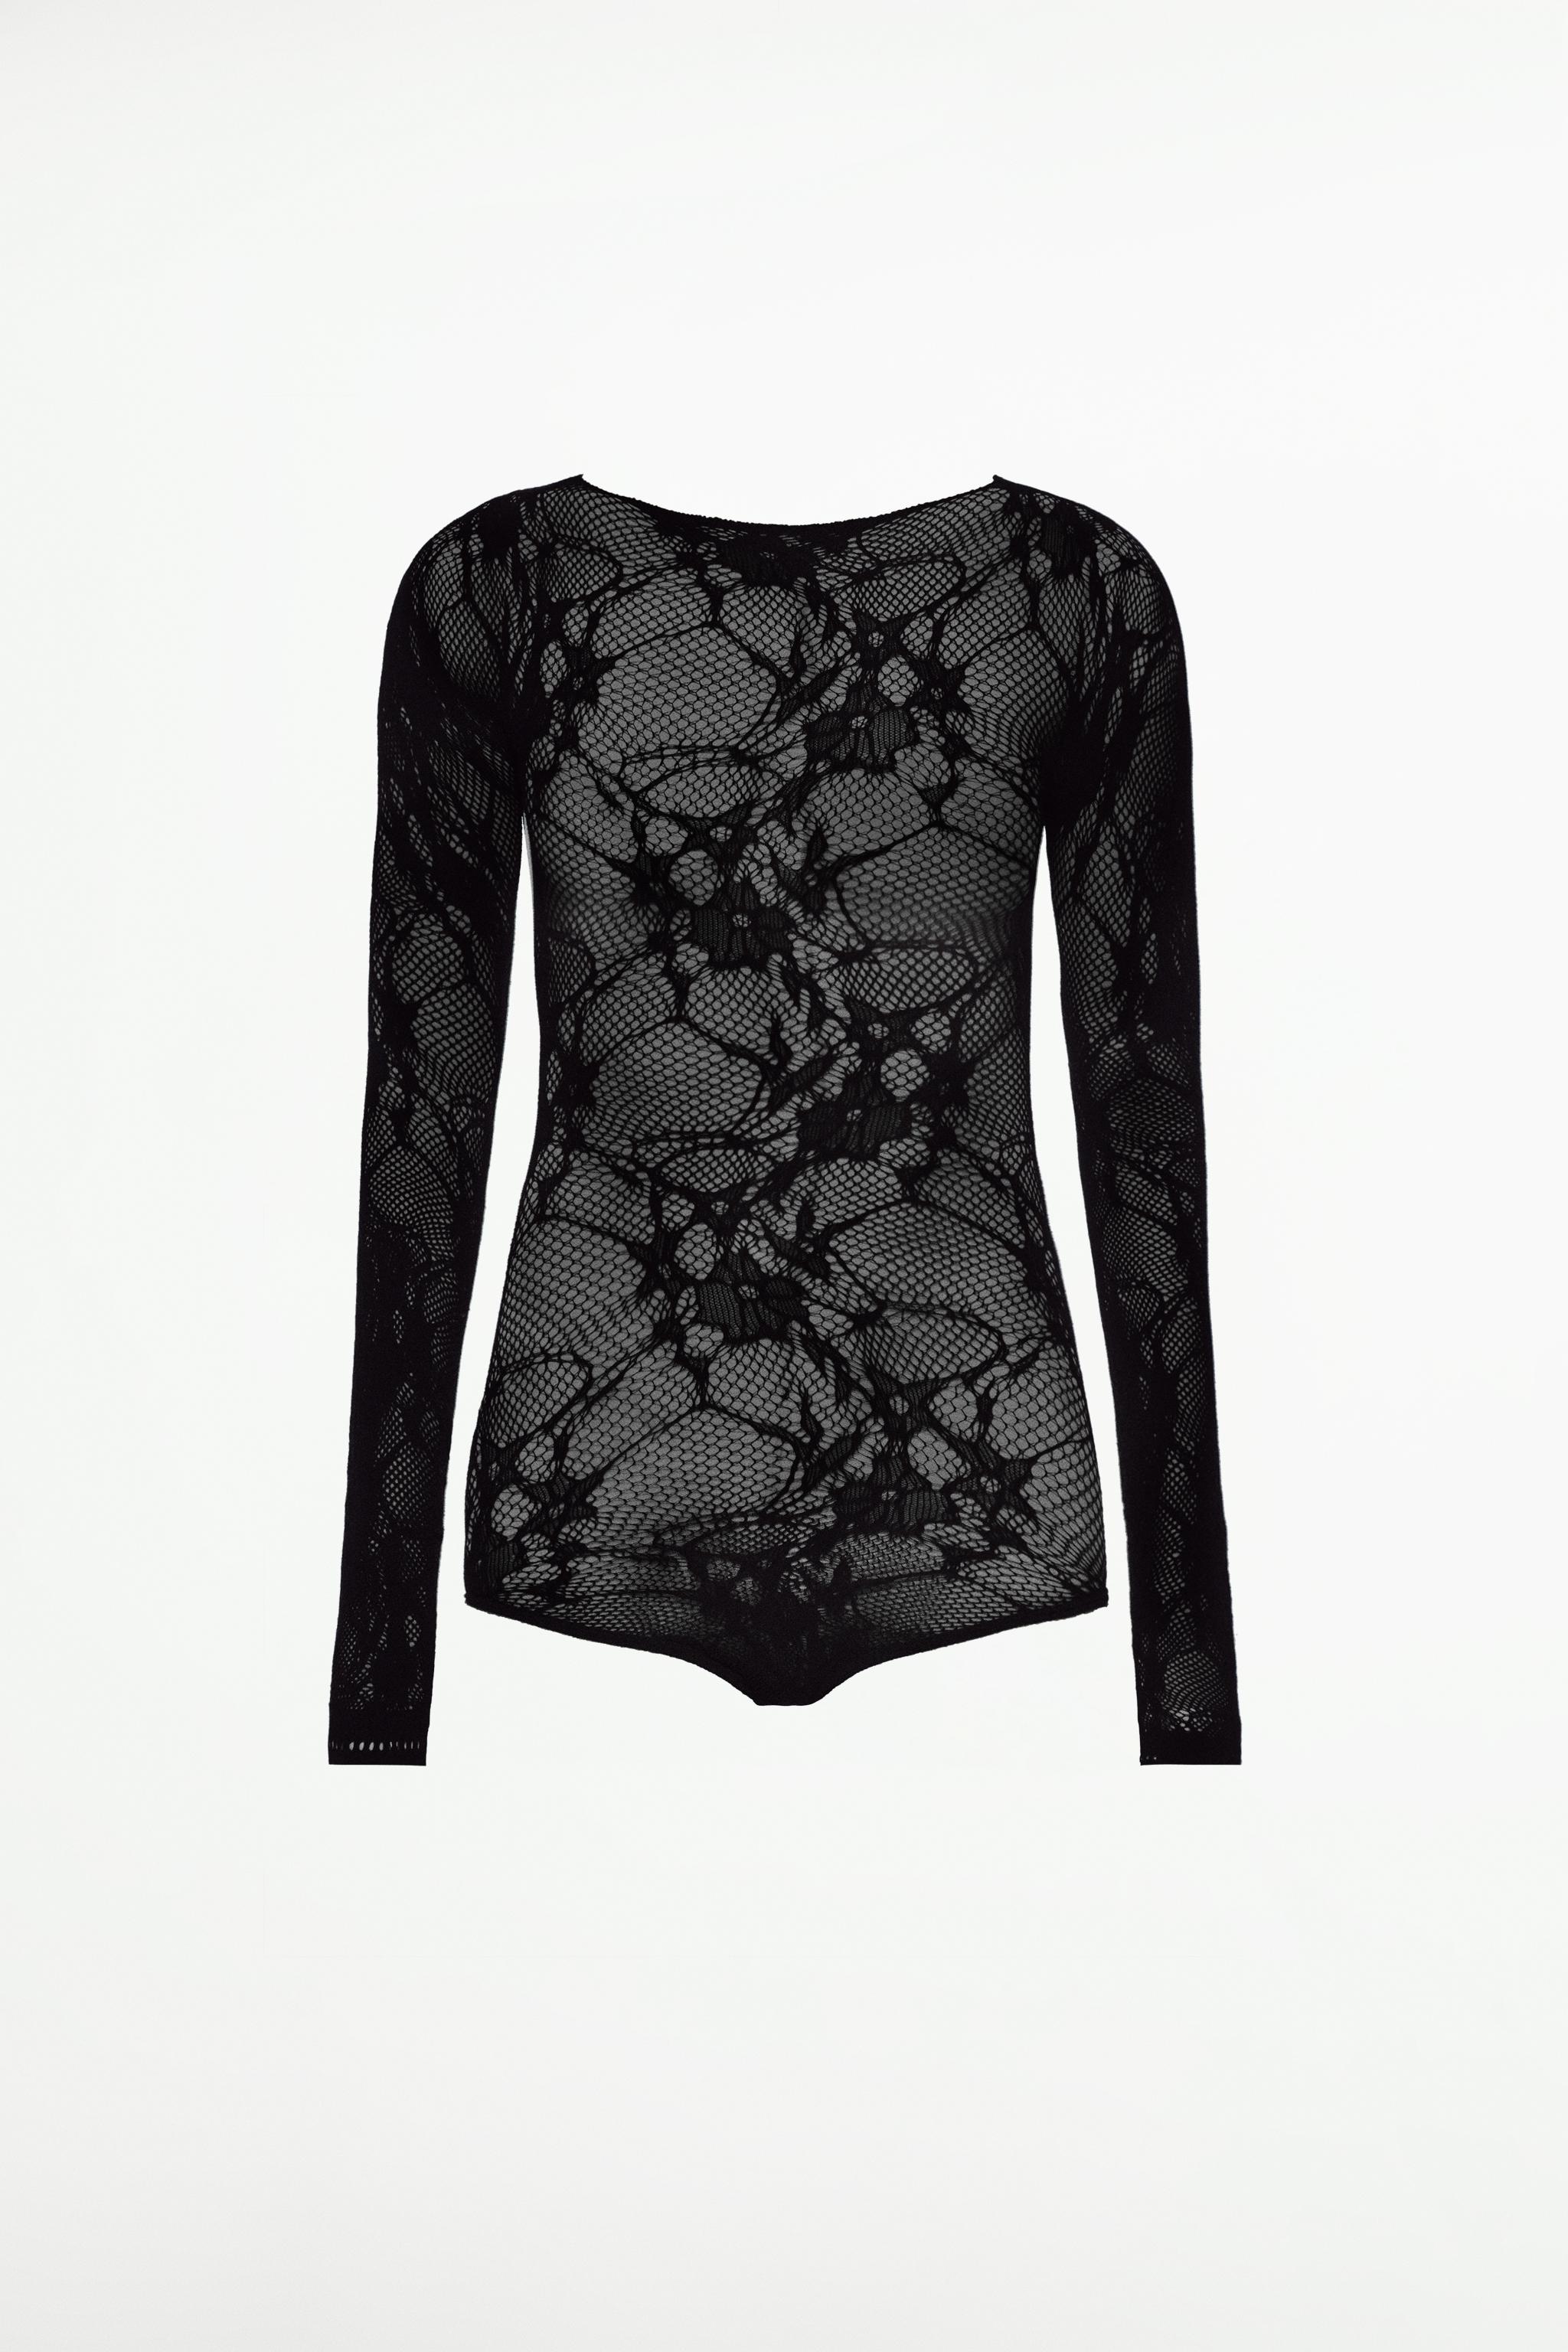 Black Lace bodysuit - Buy Online